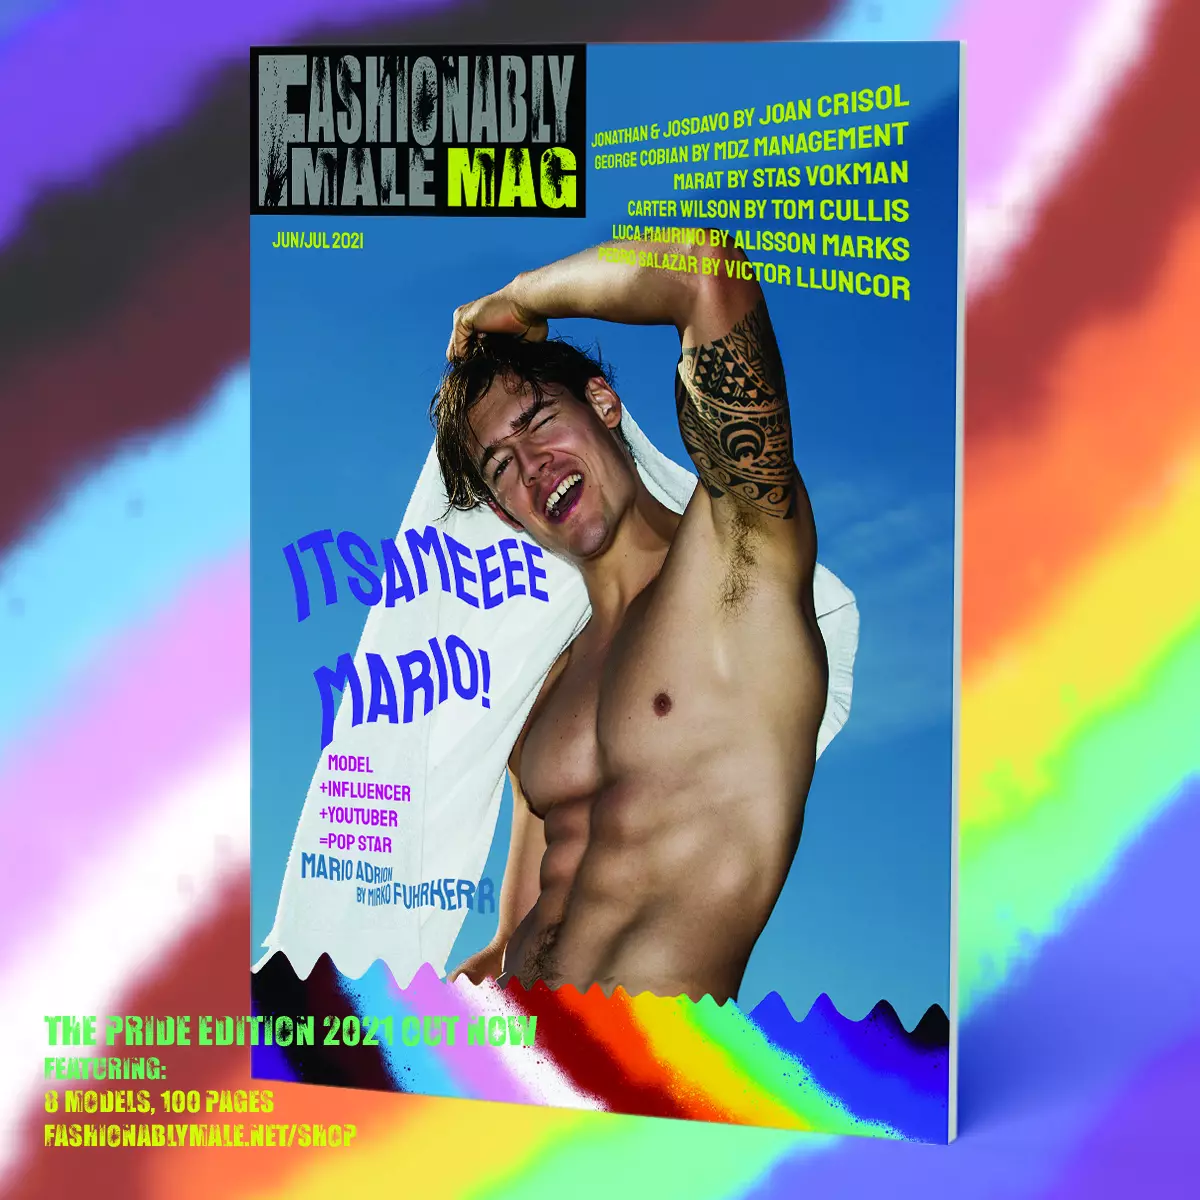 Mario Adrion Fashionably Male Mag Pride Edition 2021 շապիկի արտադրանքի համար